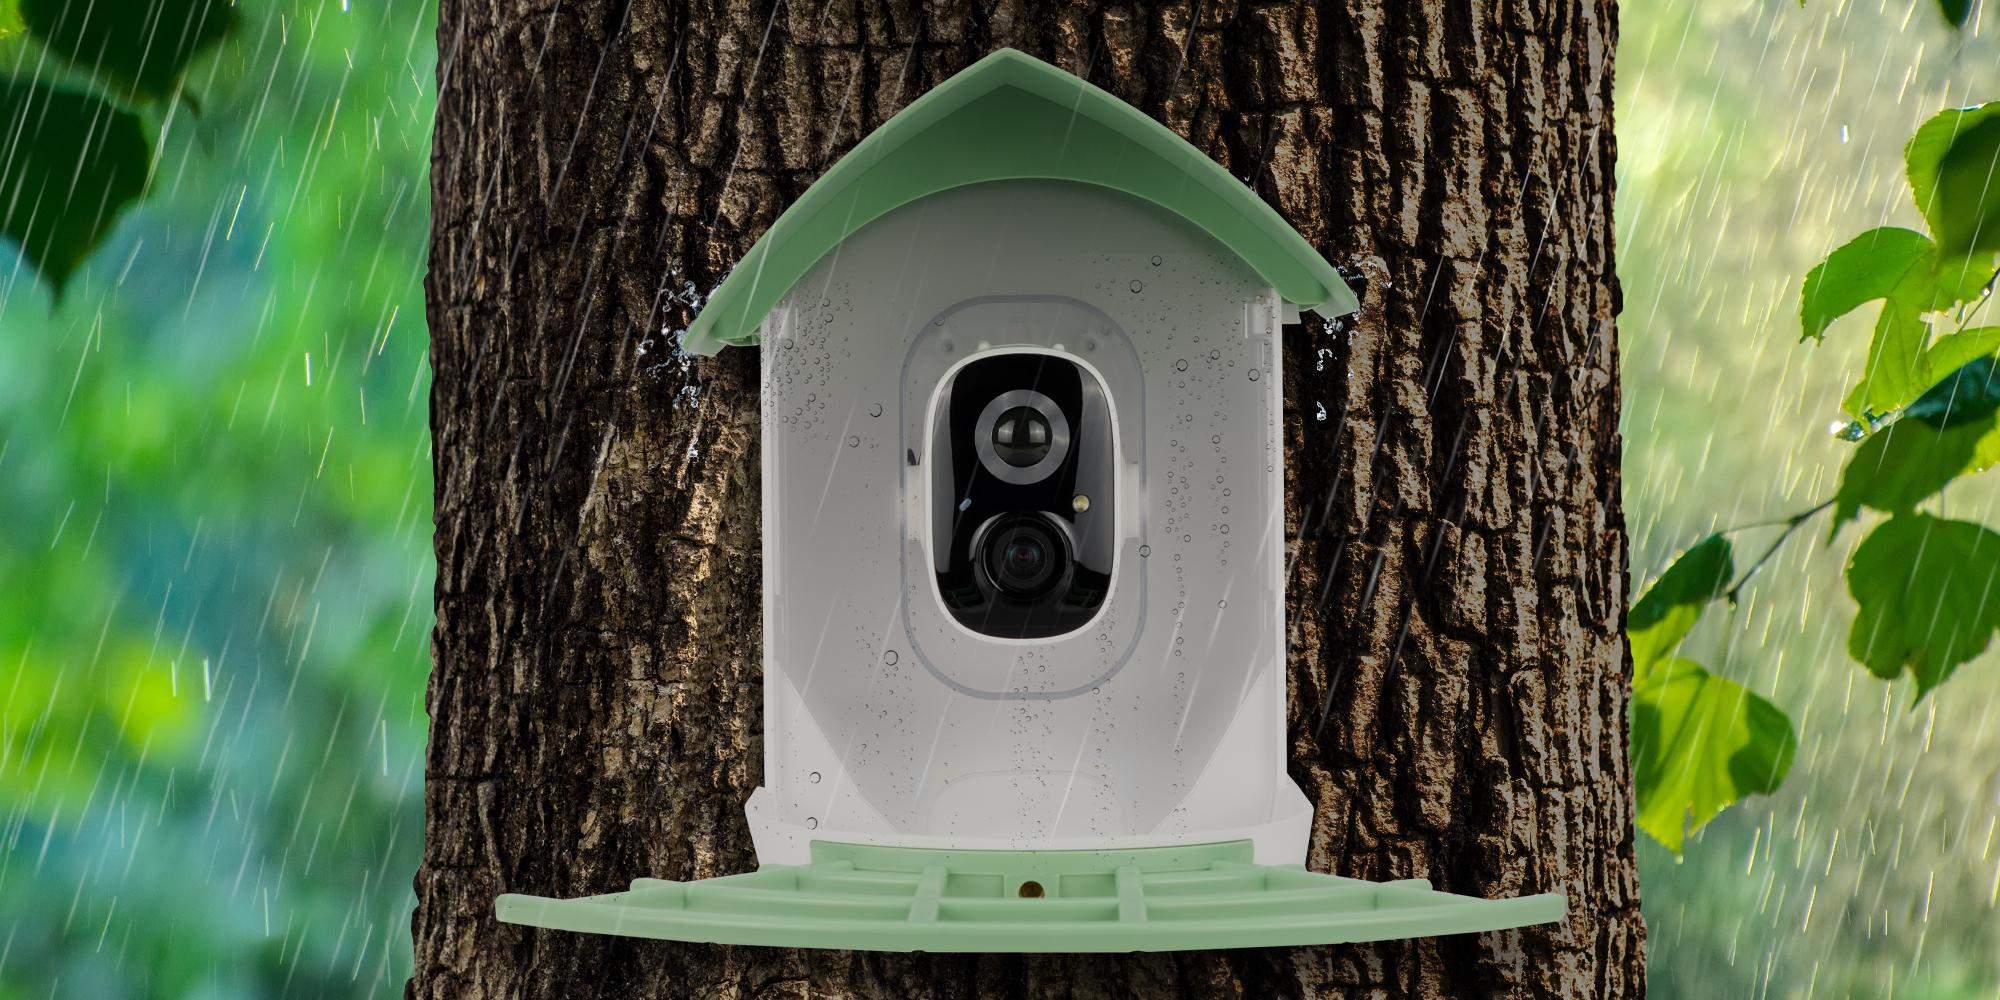 Fotopułapka Redleaf RD001 z karmnikiem dla ptaków — kamera obserwacyjna odporna na trudne warunki pogodowe